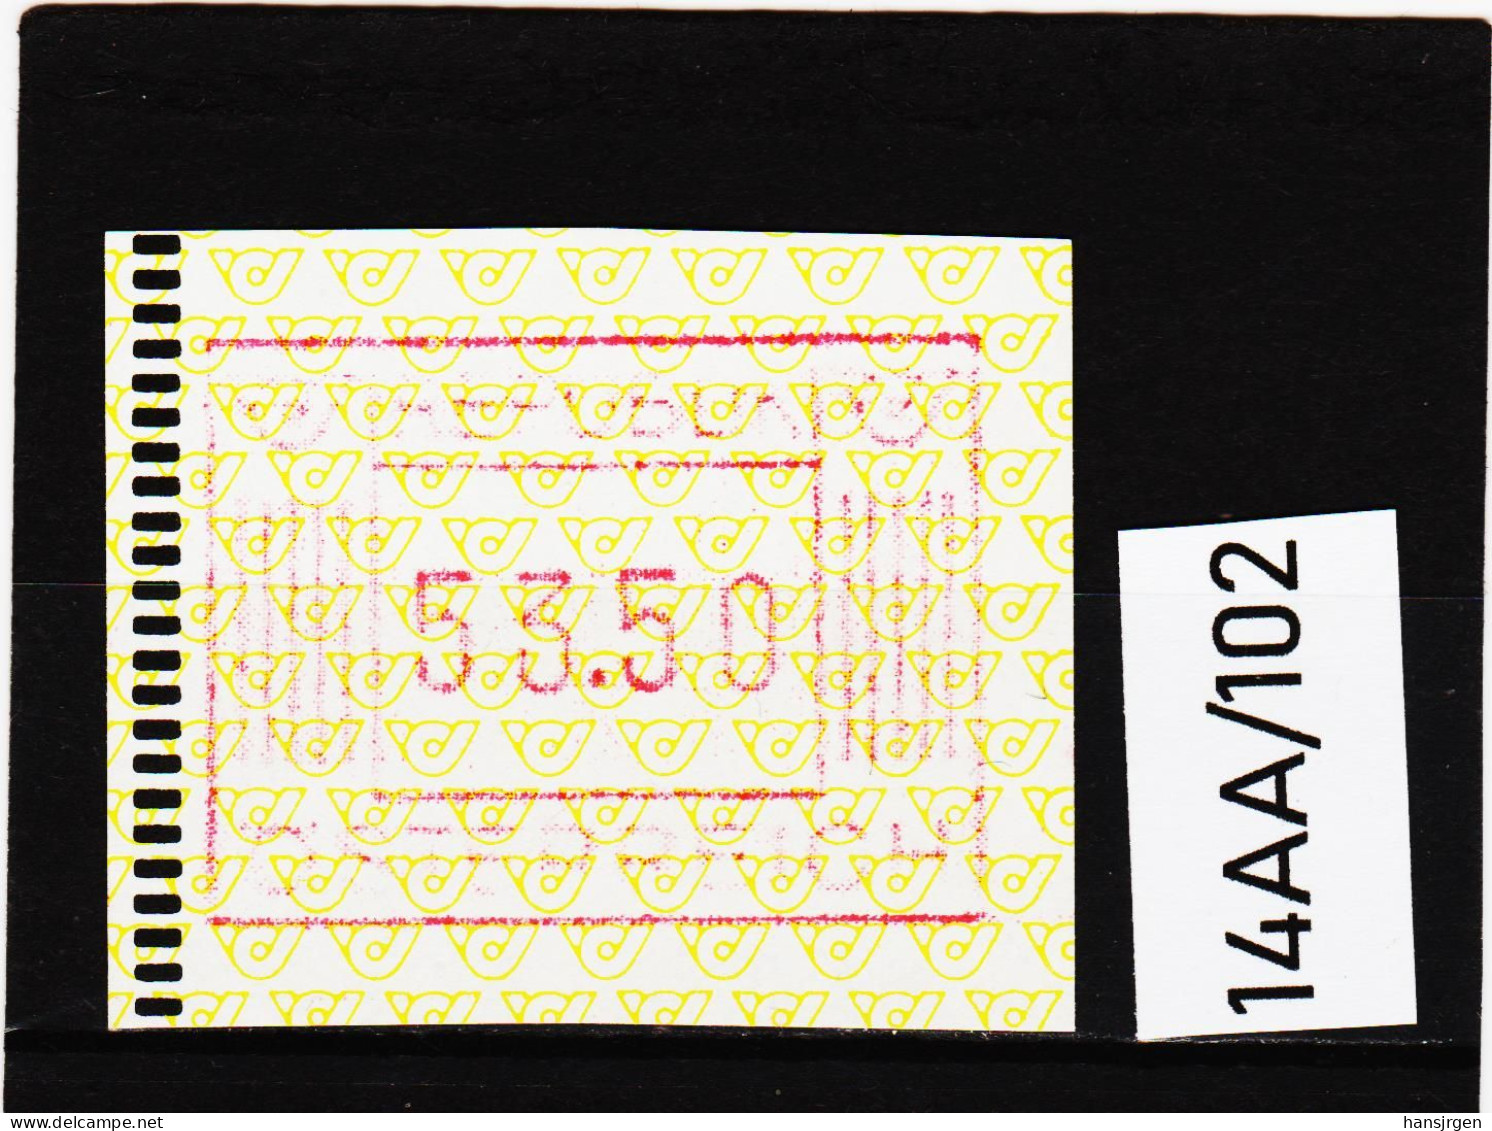 14AA/102  ÖSTERREICH 1983 AUTOMATENMARKEN 1. AUSGABE  53,50 SCHILLING   ** Postfrisch - Automatenmarken [ATM]